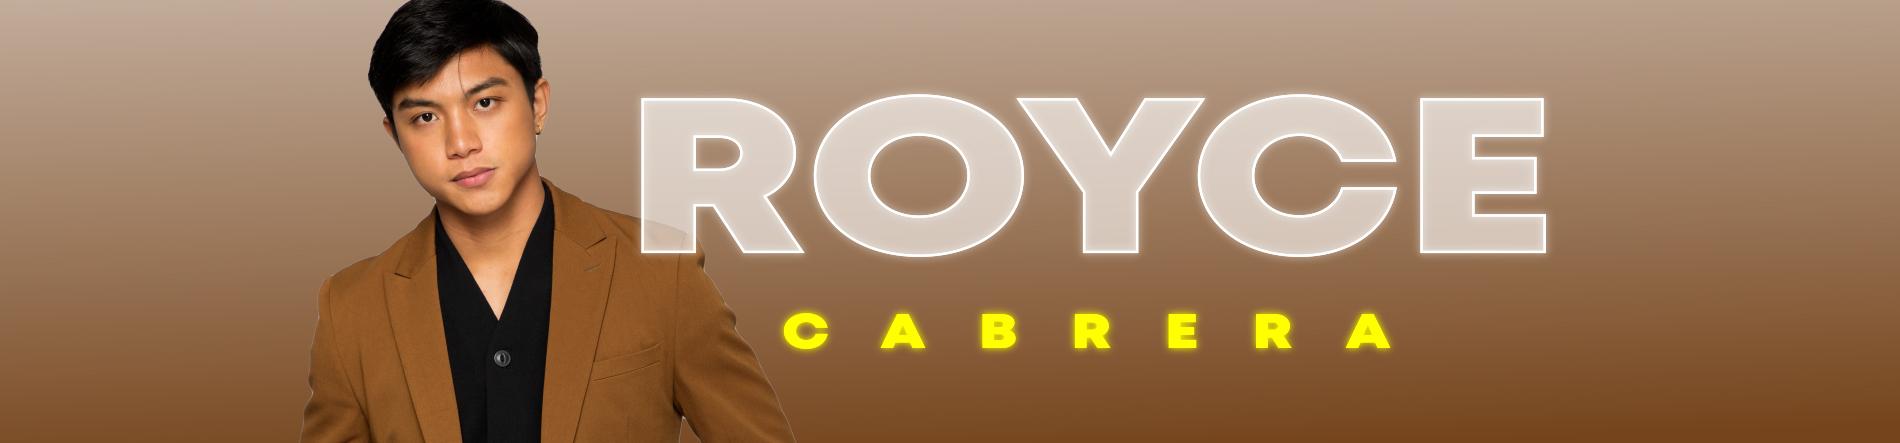 Royce Cabrera Desktop Banner